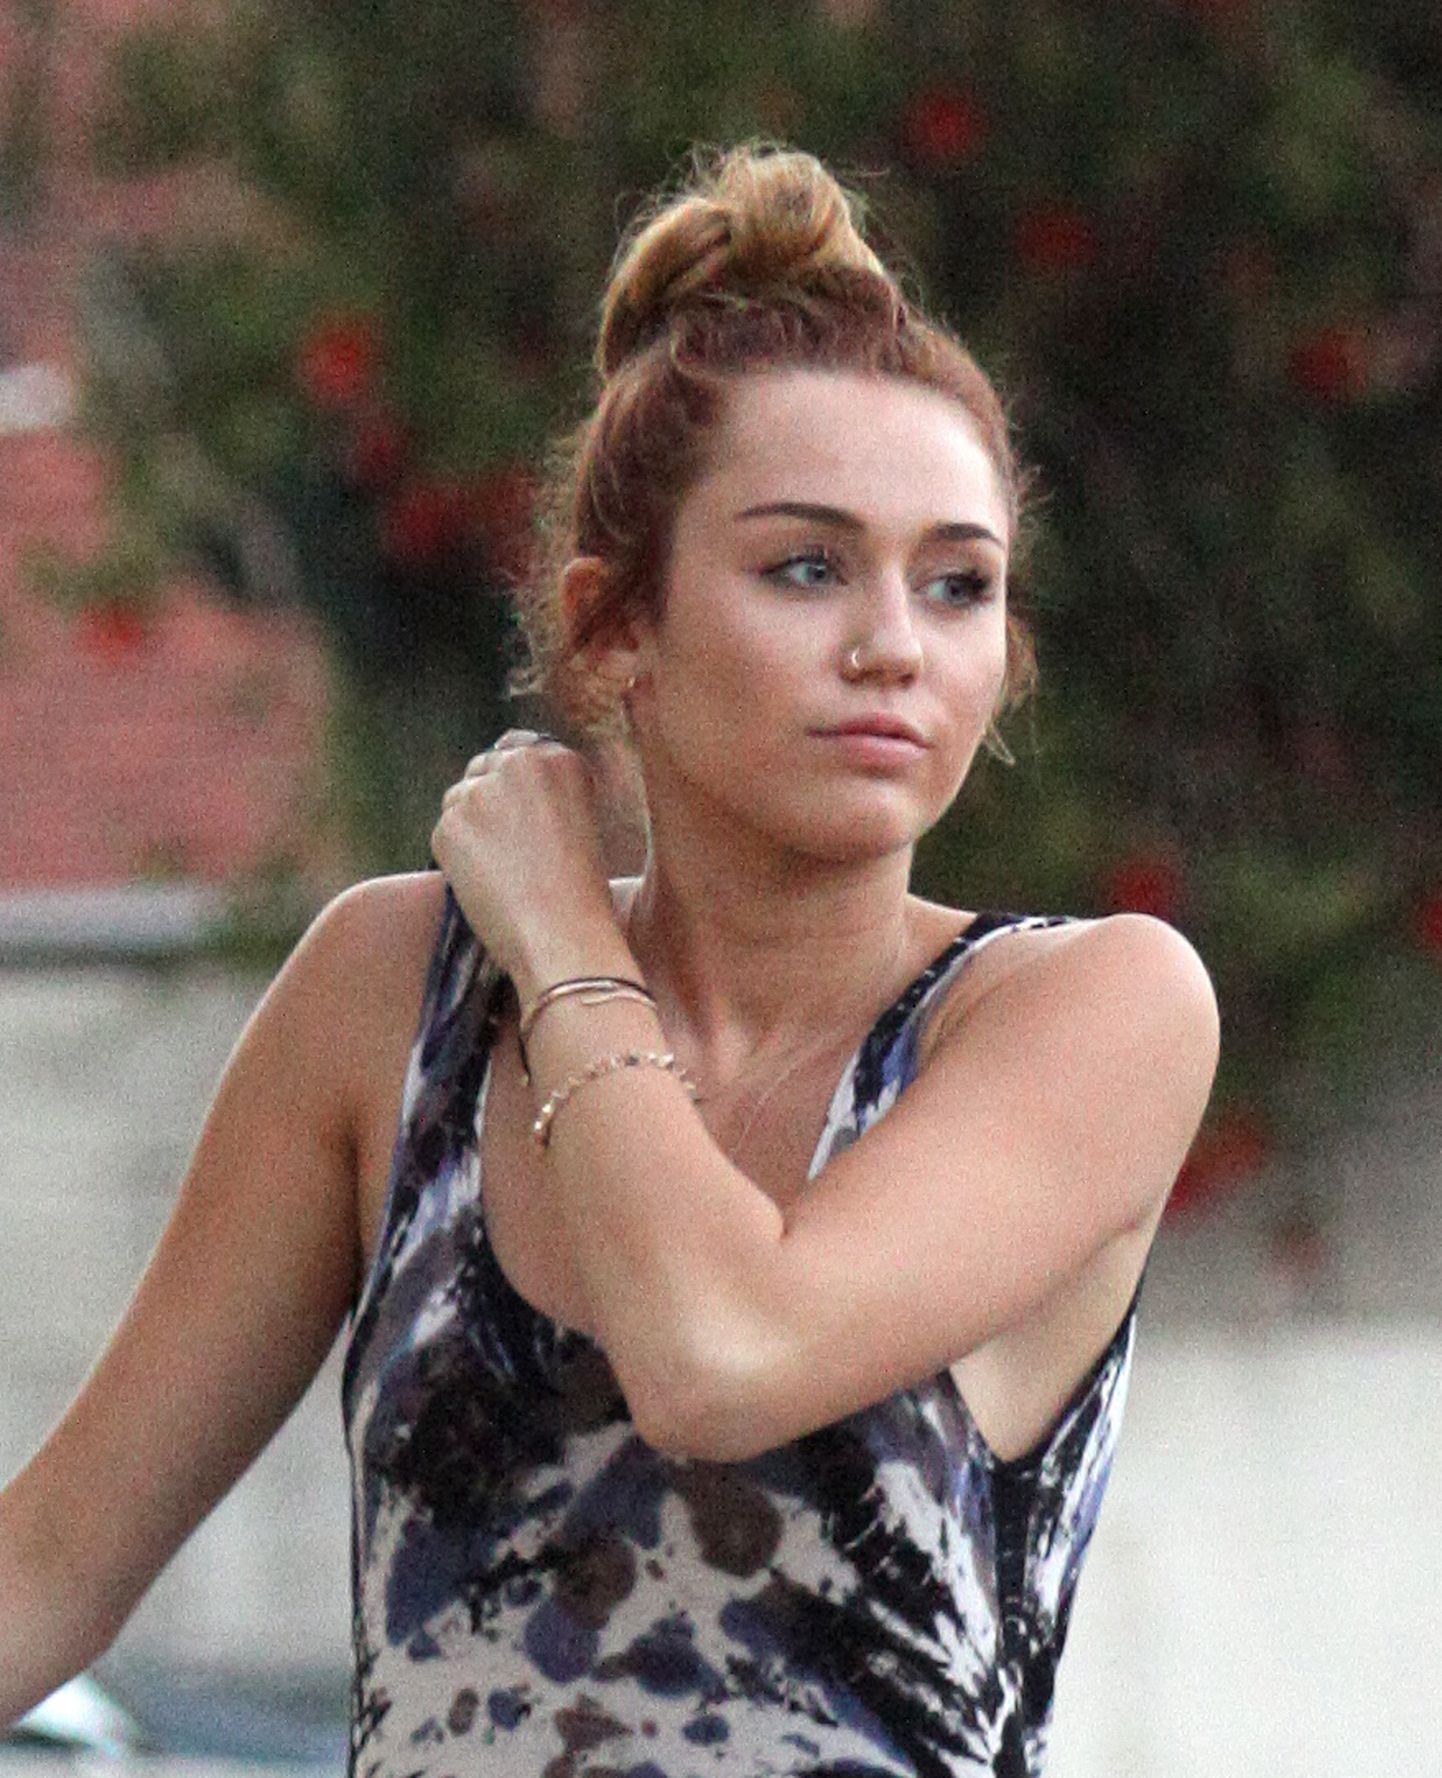 Popstaar Miley Cyrus sai tuntuks Disney kanali muusikast ja naerudest pakatavas sarjas «Hannah Montana». Cyrus on aga tõdenud, et sarja võtteplatsil toimuv muutis tema elu... ja mitte ainult heas mõttes.